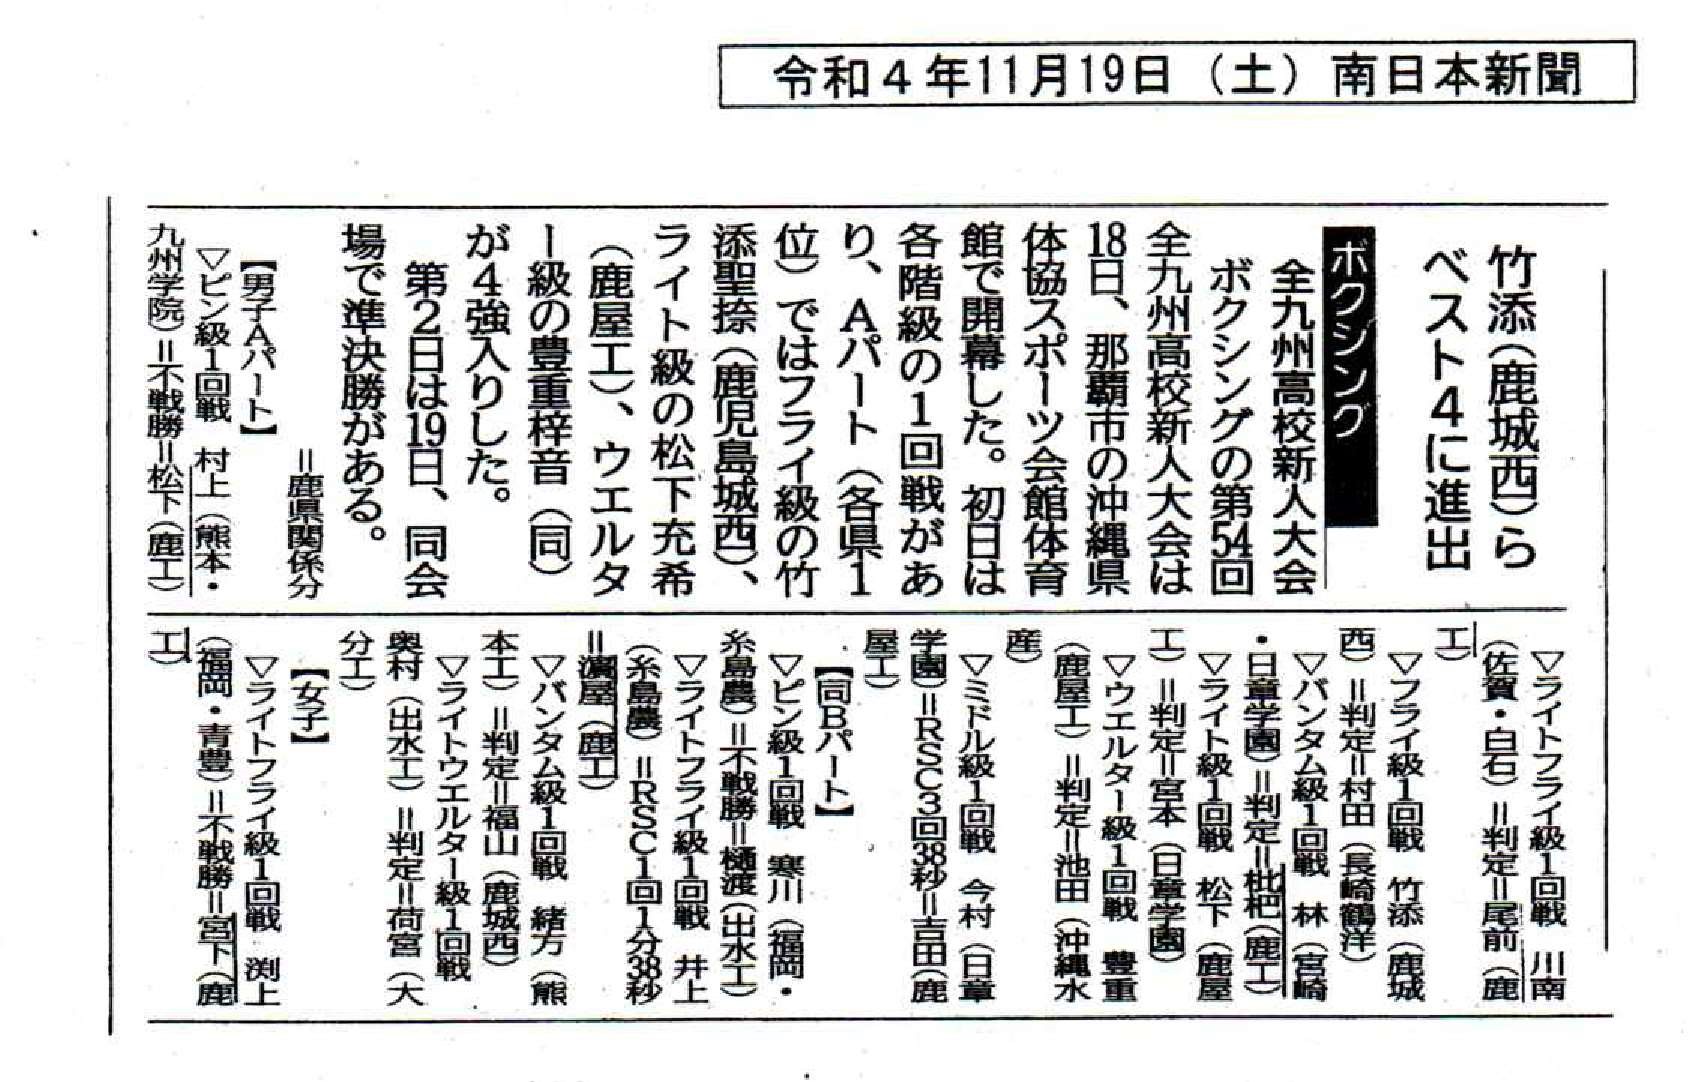 R041119ボクシング 南日本新聞